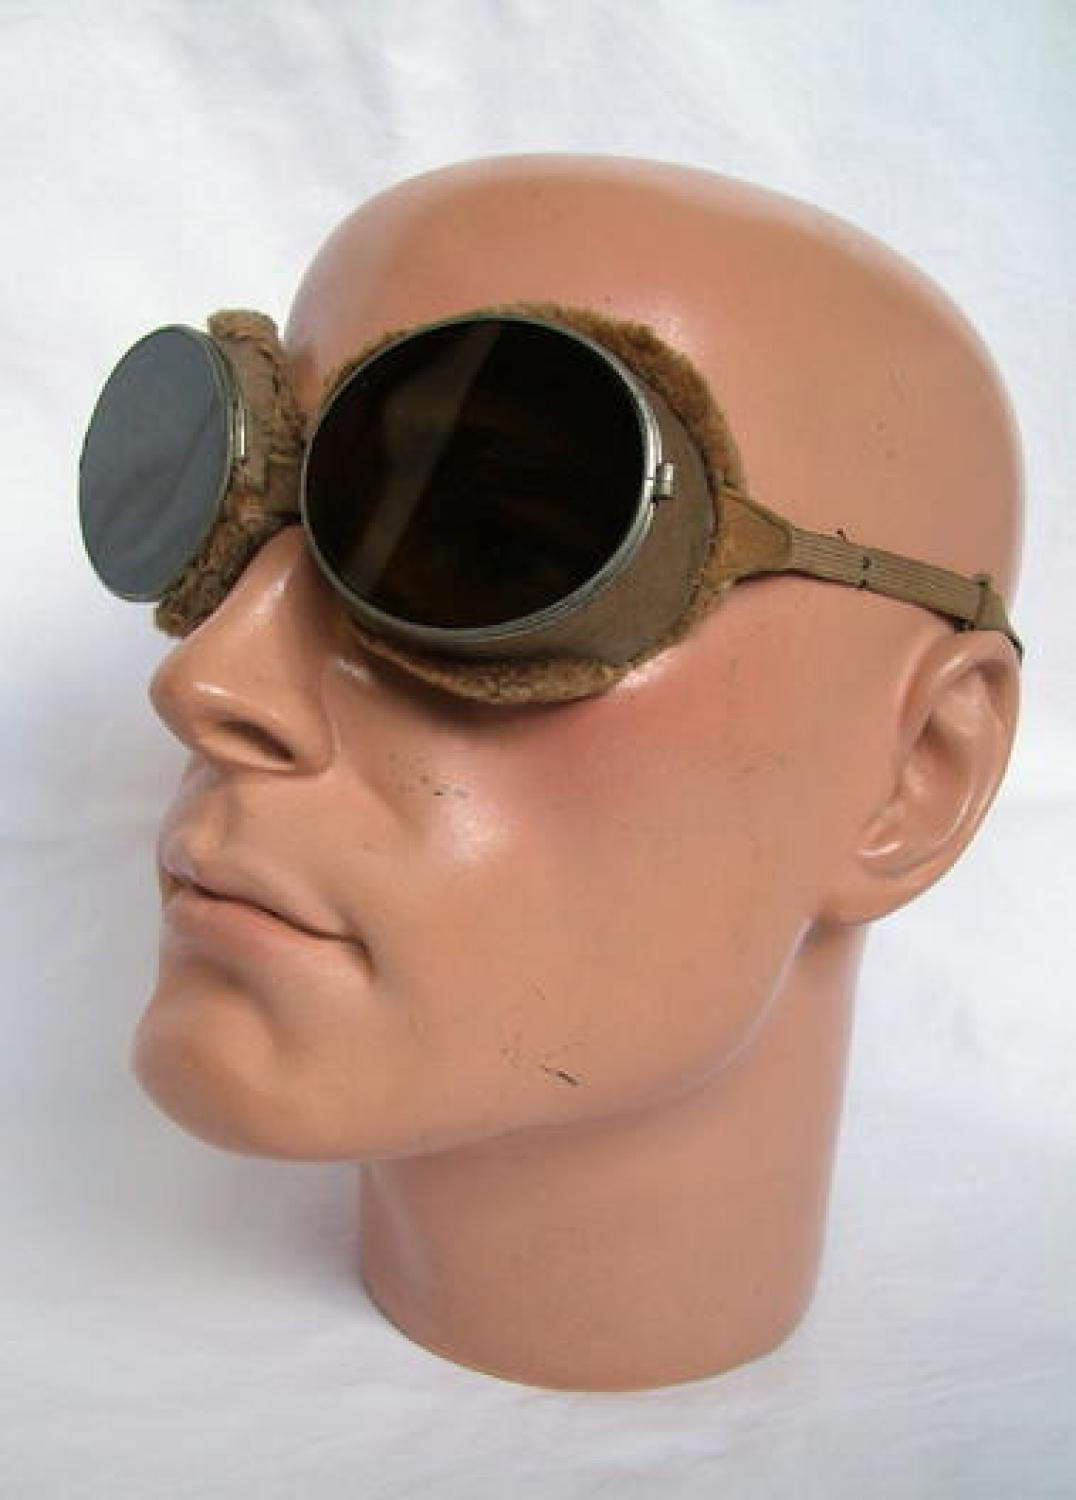 RFC - Interwar Period Flying Goggles